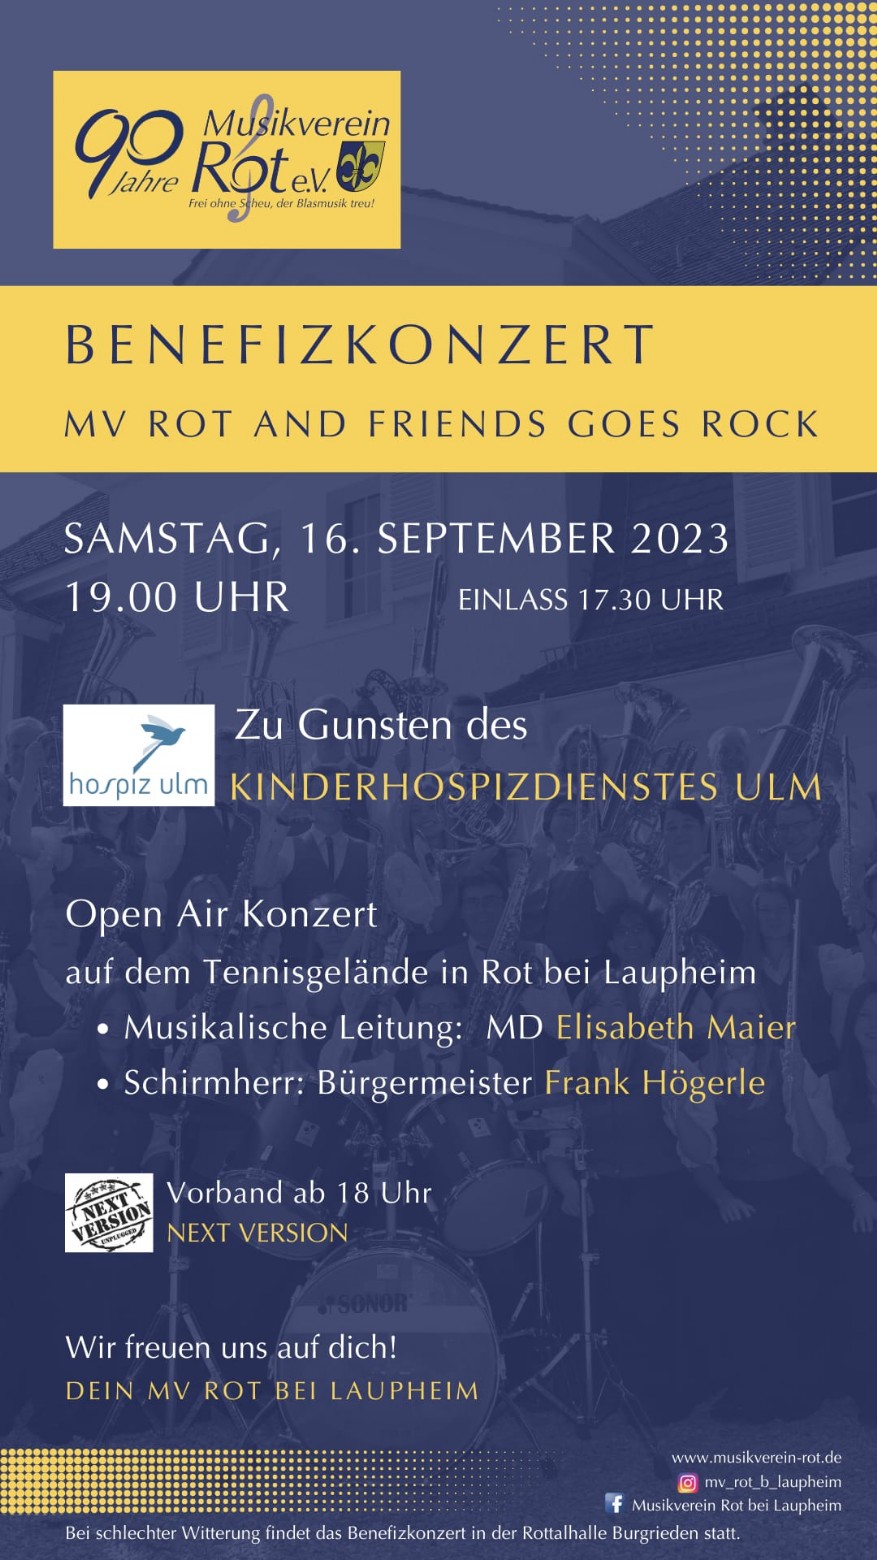 Benefizkonzert MV Rot and Friends goes Rock am Samstag, 16. September 2023 auf dem Tennisgelände in Rot bei Laupheim